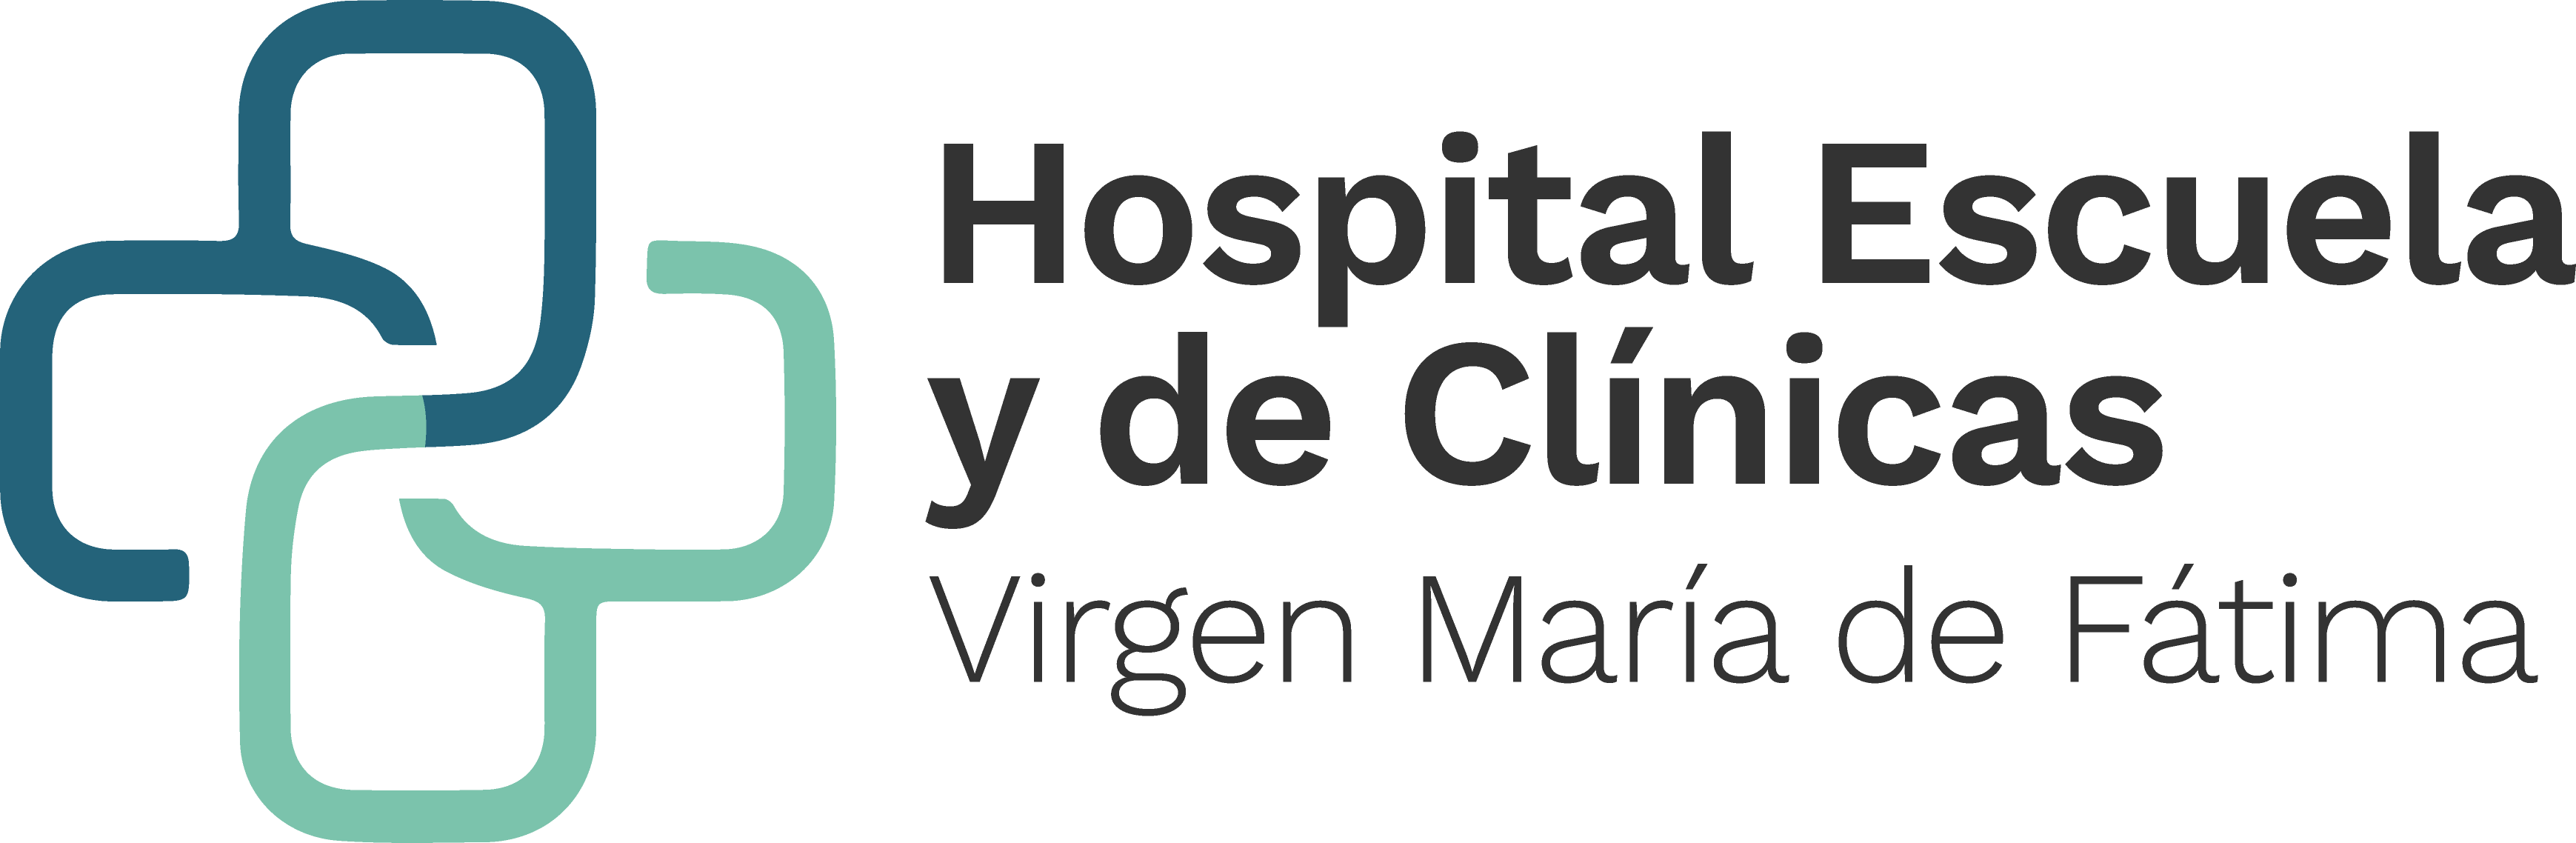 Hospital Escuela y de Clínicas "Virgen María de Fátima"